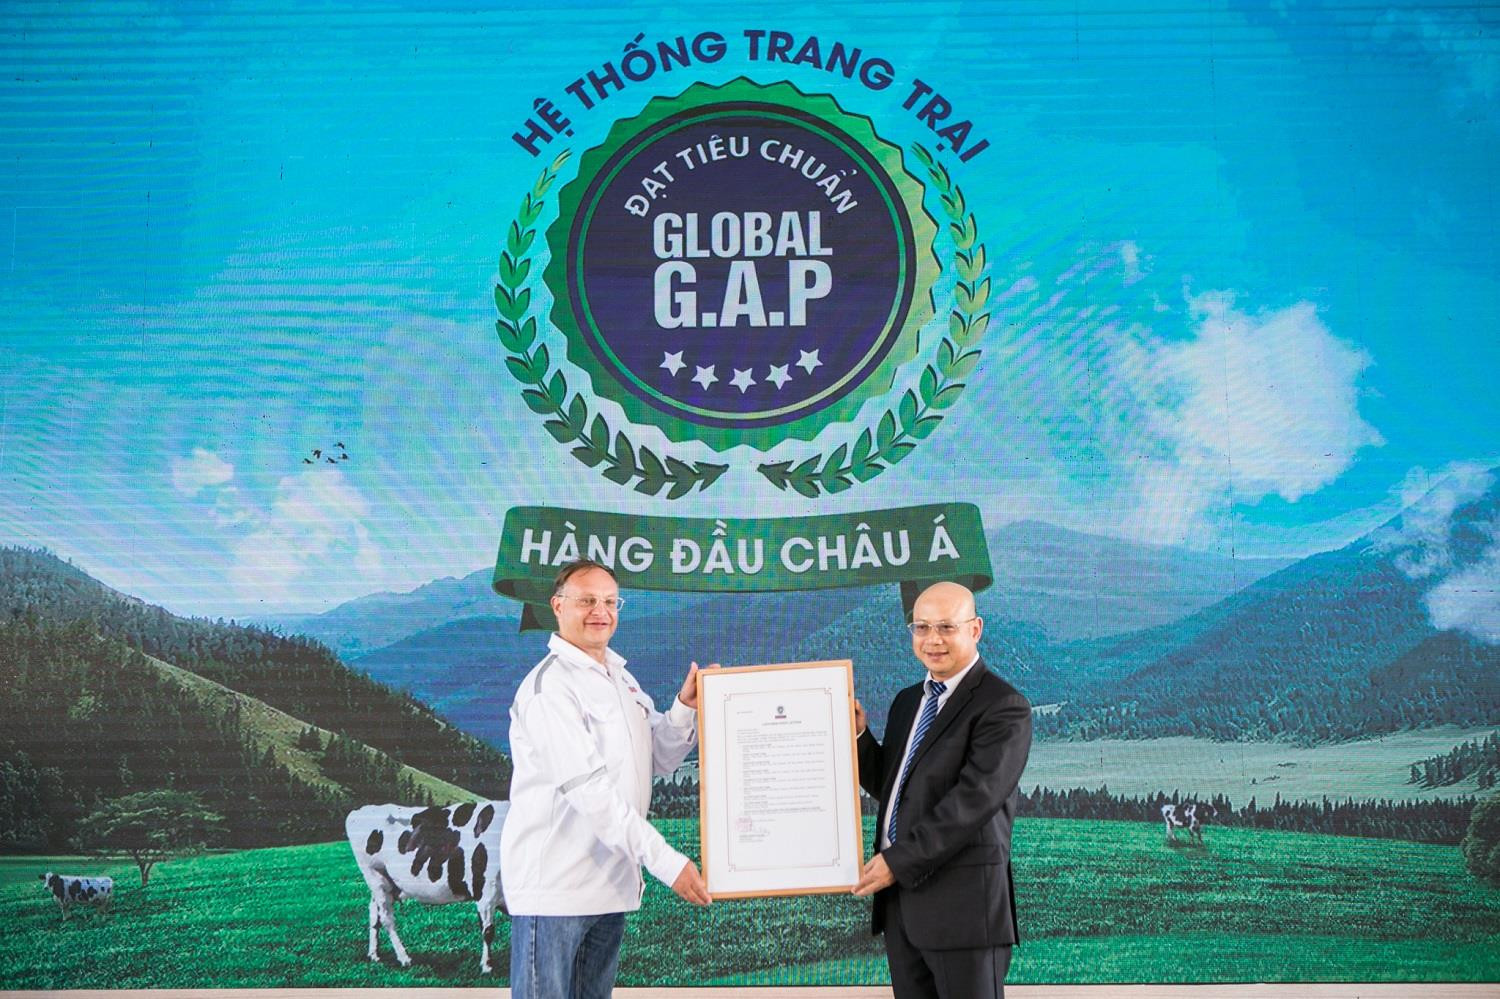 Đại diện Bureau Veritas trao giấy xác nhận chính thức về Hệ thống trang trại chuẩn Global G.A.P lớn nhất châu Á cho đại diện Vinamilk tại sự kiện. Ảnh: P.V